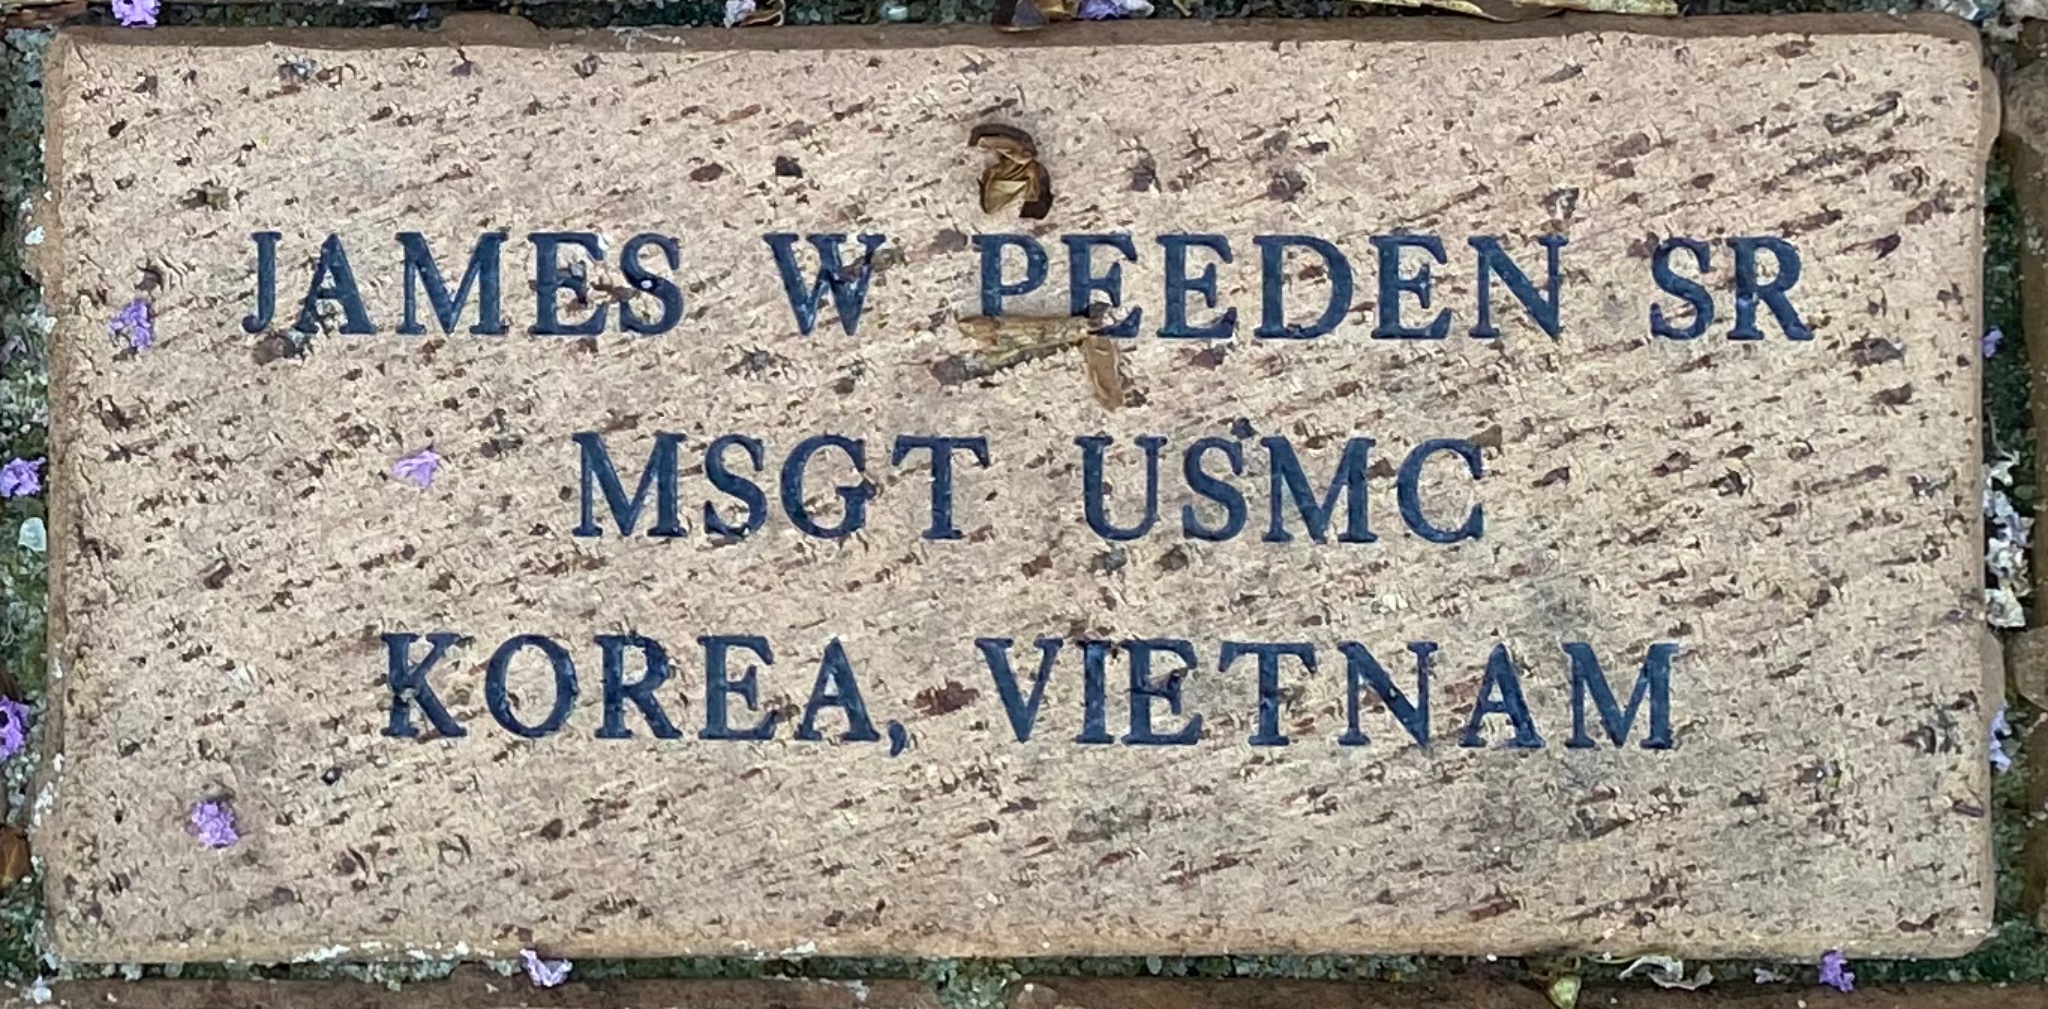 JAMES W PEEDEN SR MSGT USMC KOREA, VIETNAM